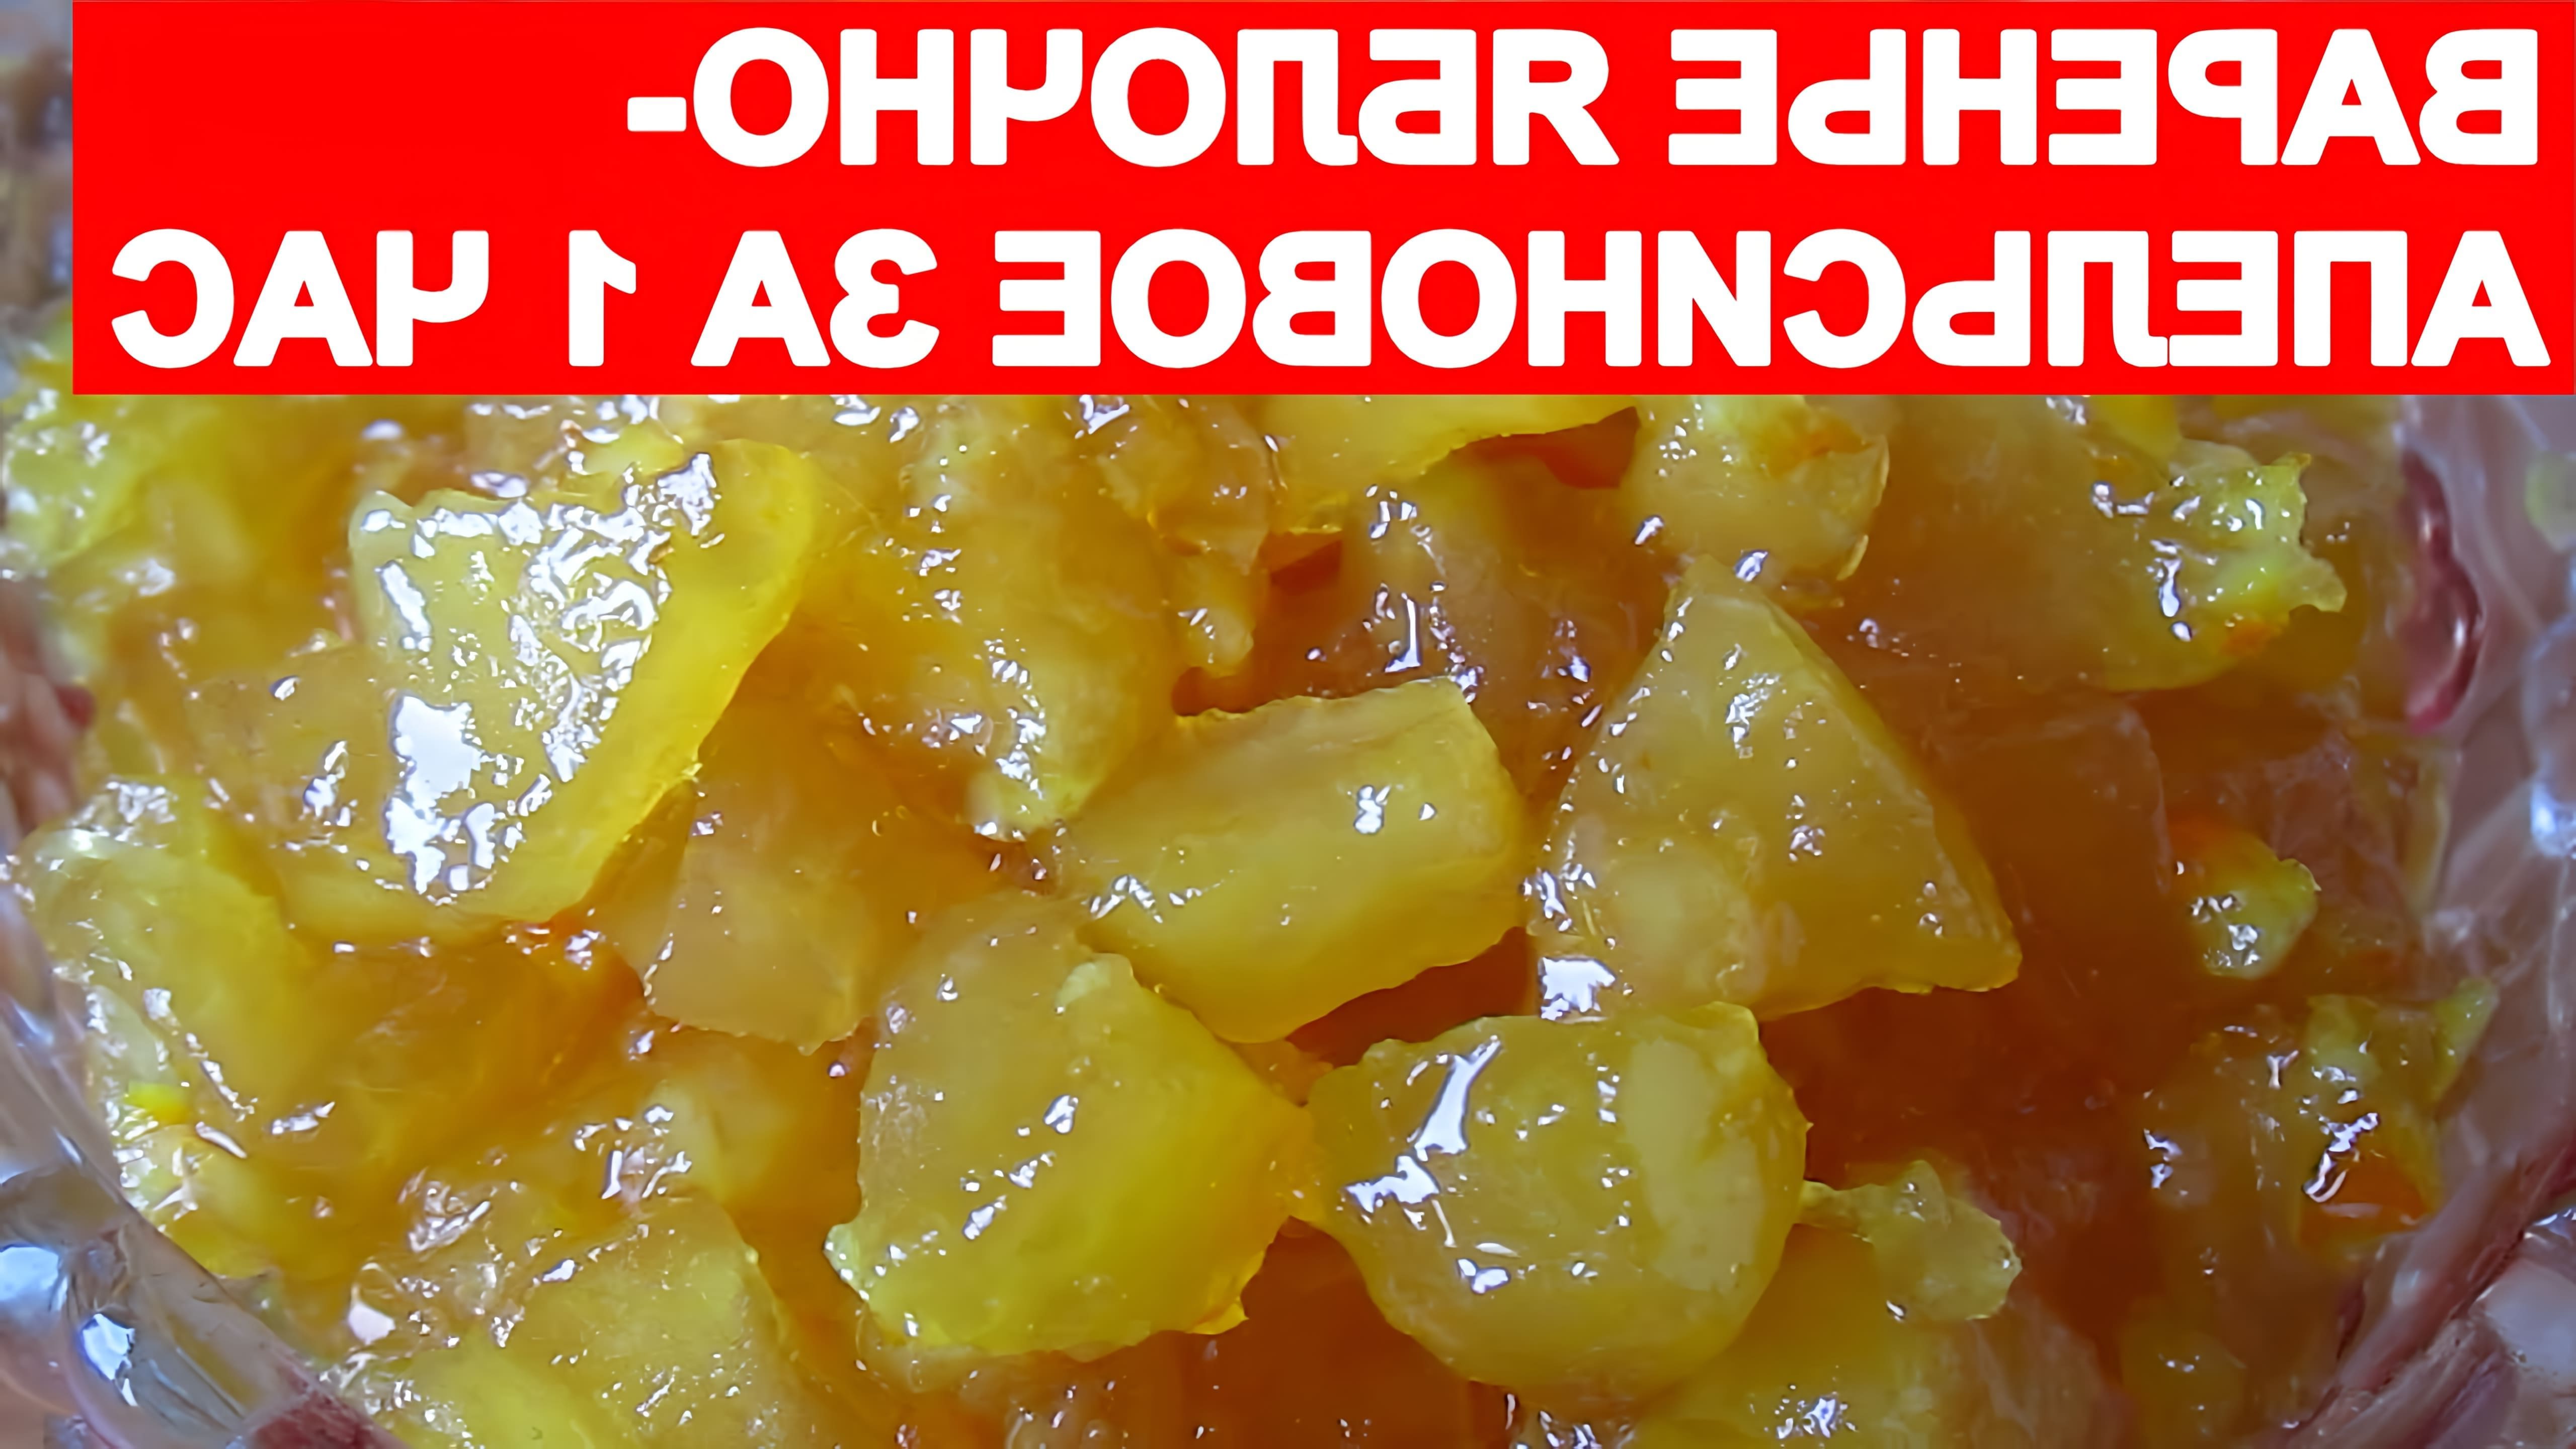 В этом видео демонстрируется процесс приготовления яблочно-апельсинового варенья